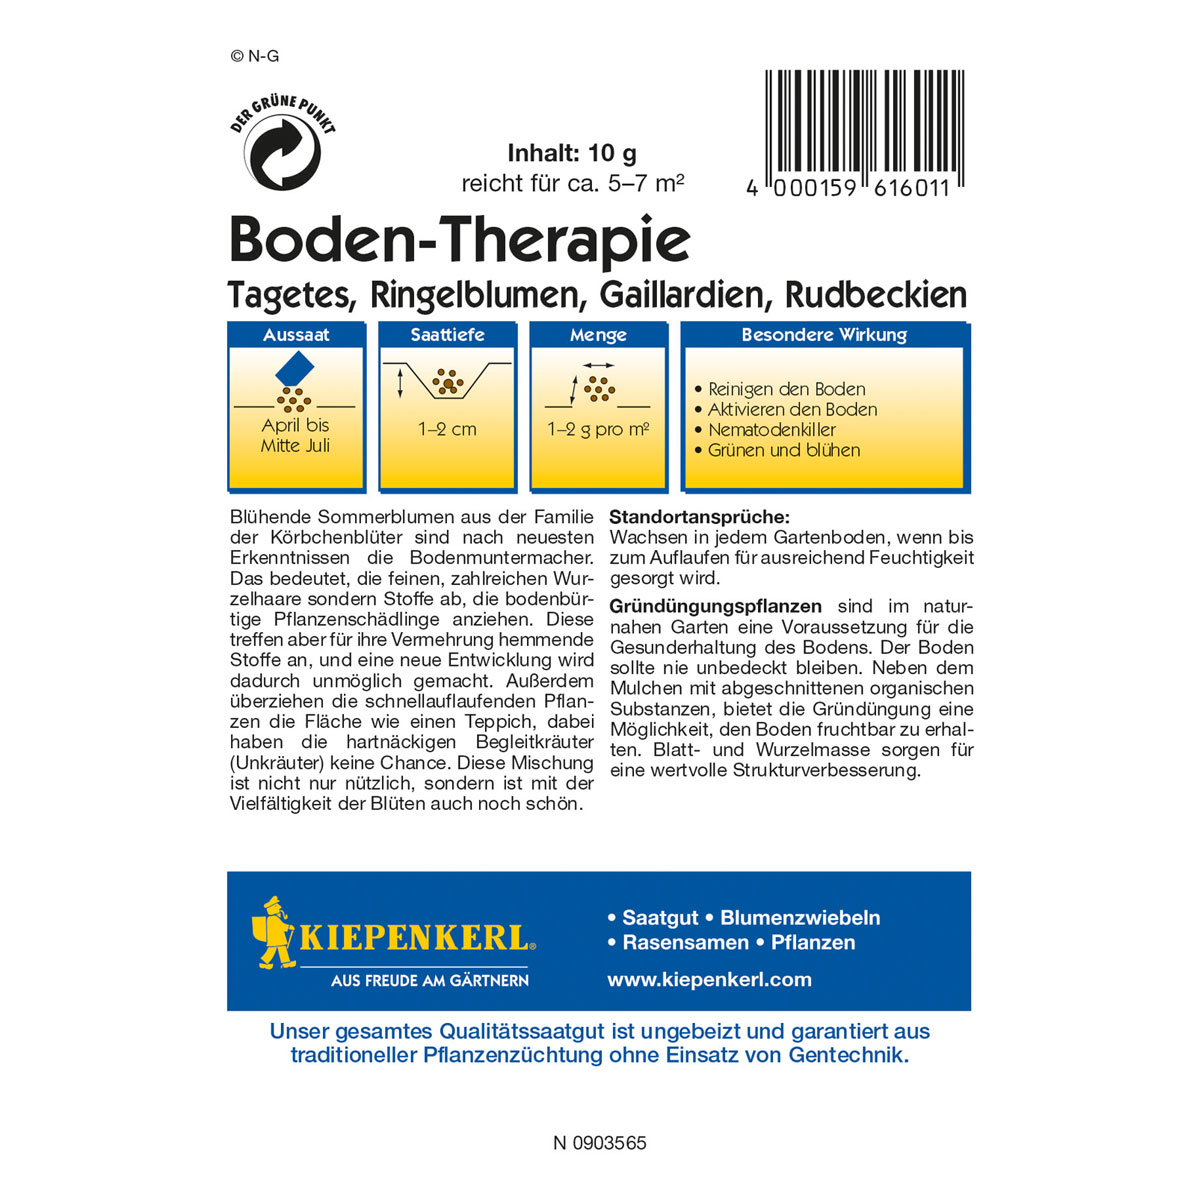 Boden-Therapie, 10 g